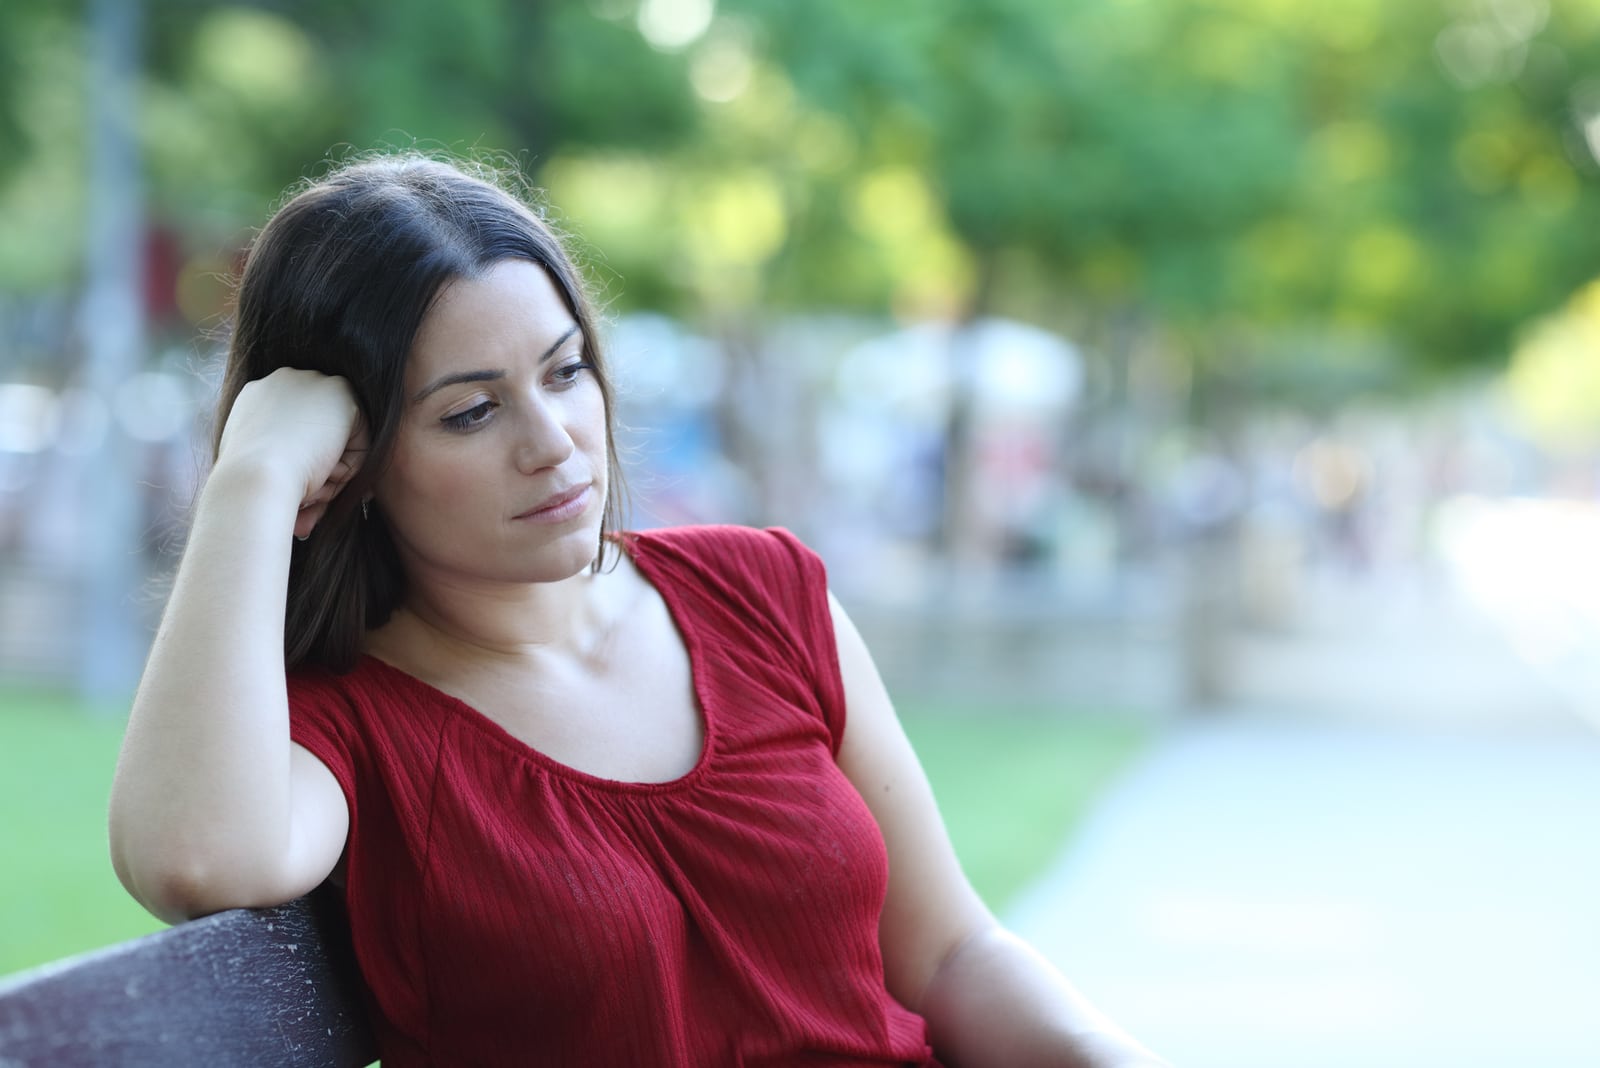 donna pensierosa con maglietta rossa seduta su una panchina nel parco